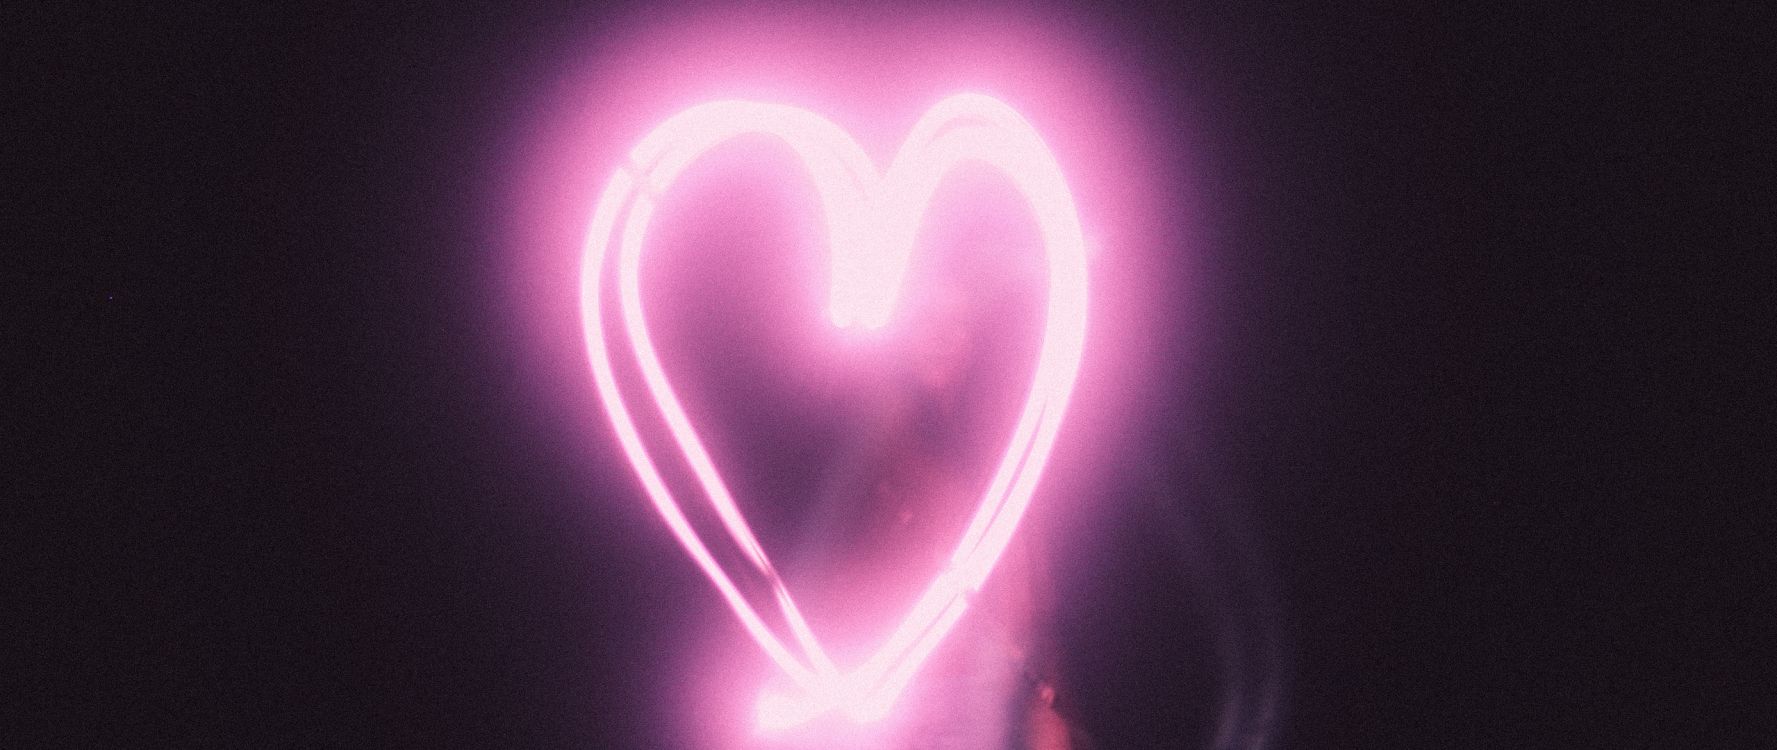 光, 粉红色, 心脏, 爱情, 品红色 壁纸 2560x1080 允许